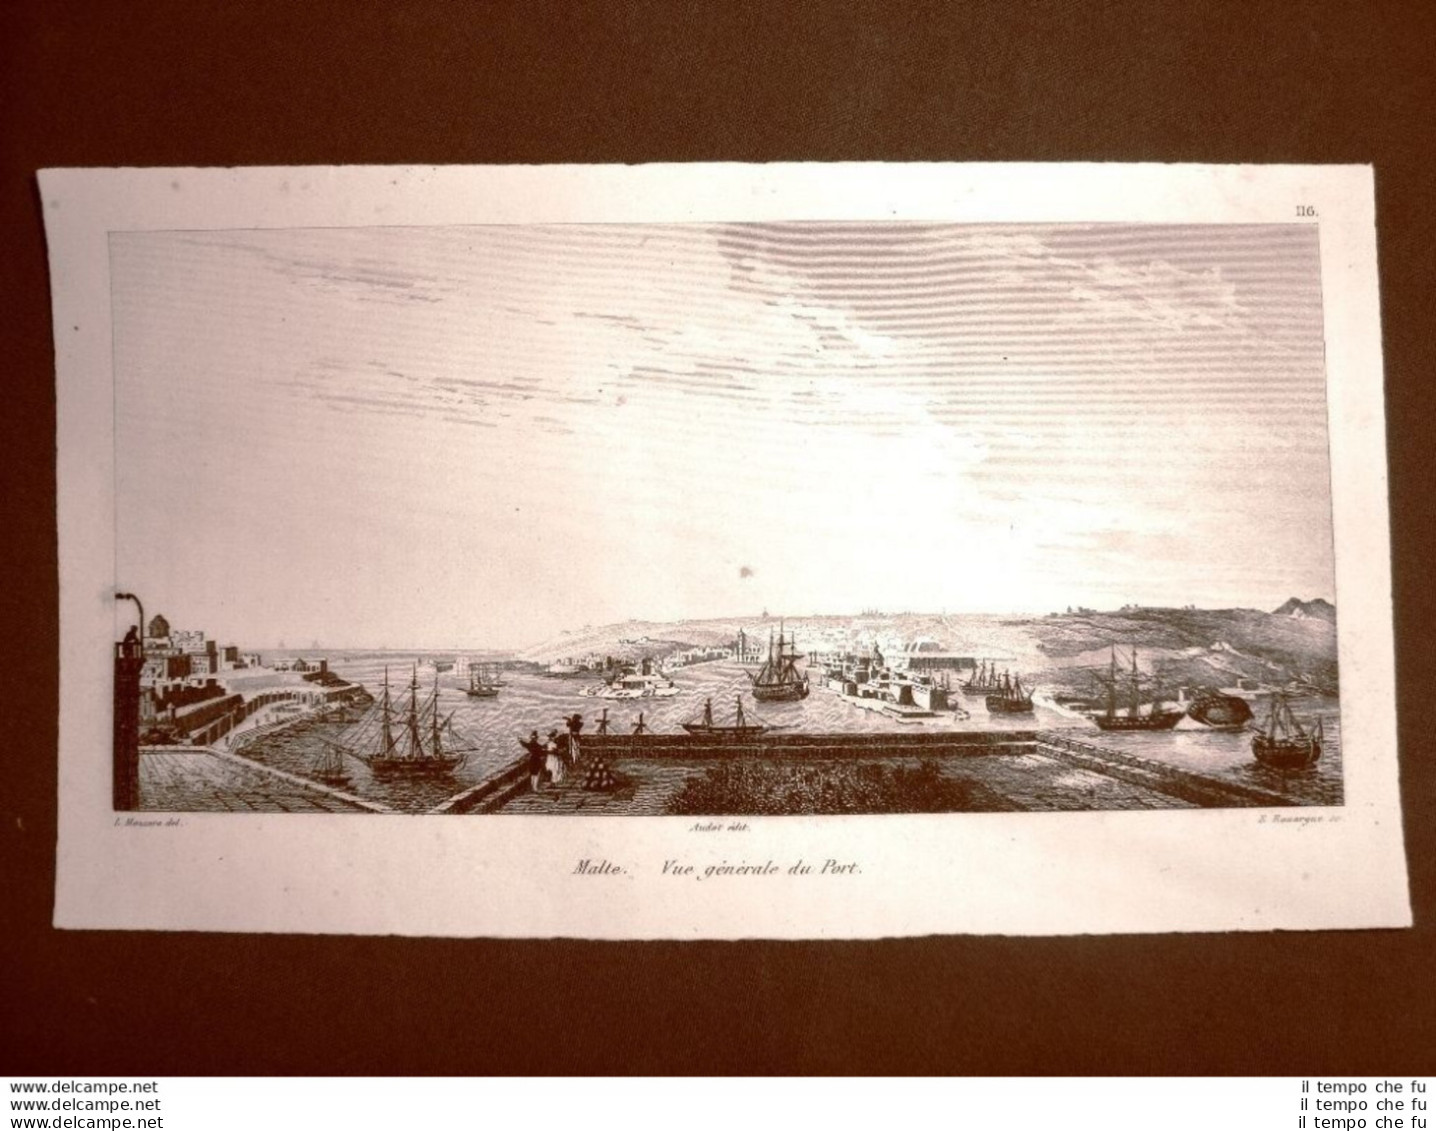 Malta Veduta Generale Del Porto Incisione All'acquaforte Del 1837 Audot Pomba - Antes 1900